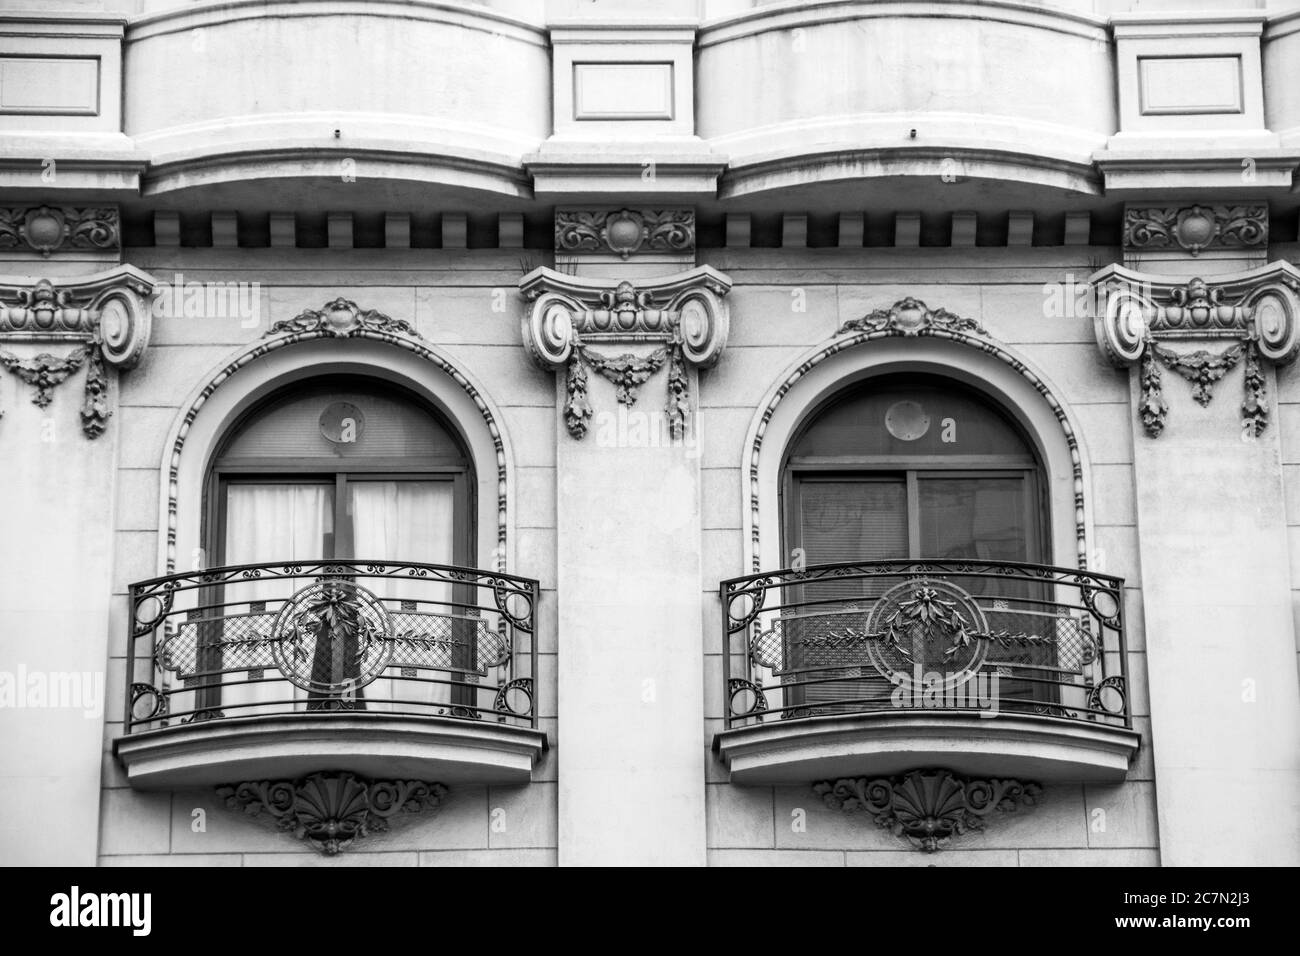 Ein prunkvolles Gebäude mit Balkonen; Barcelona, Spanien. Stockfoto